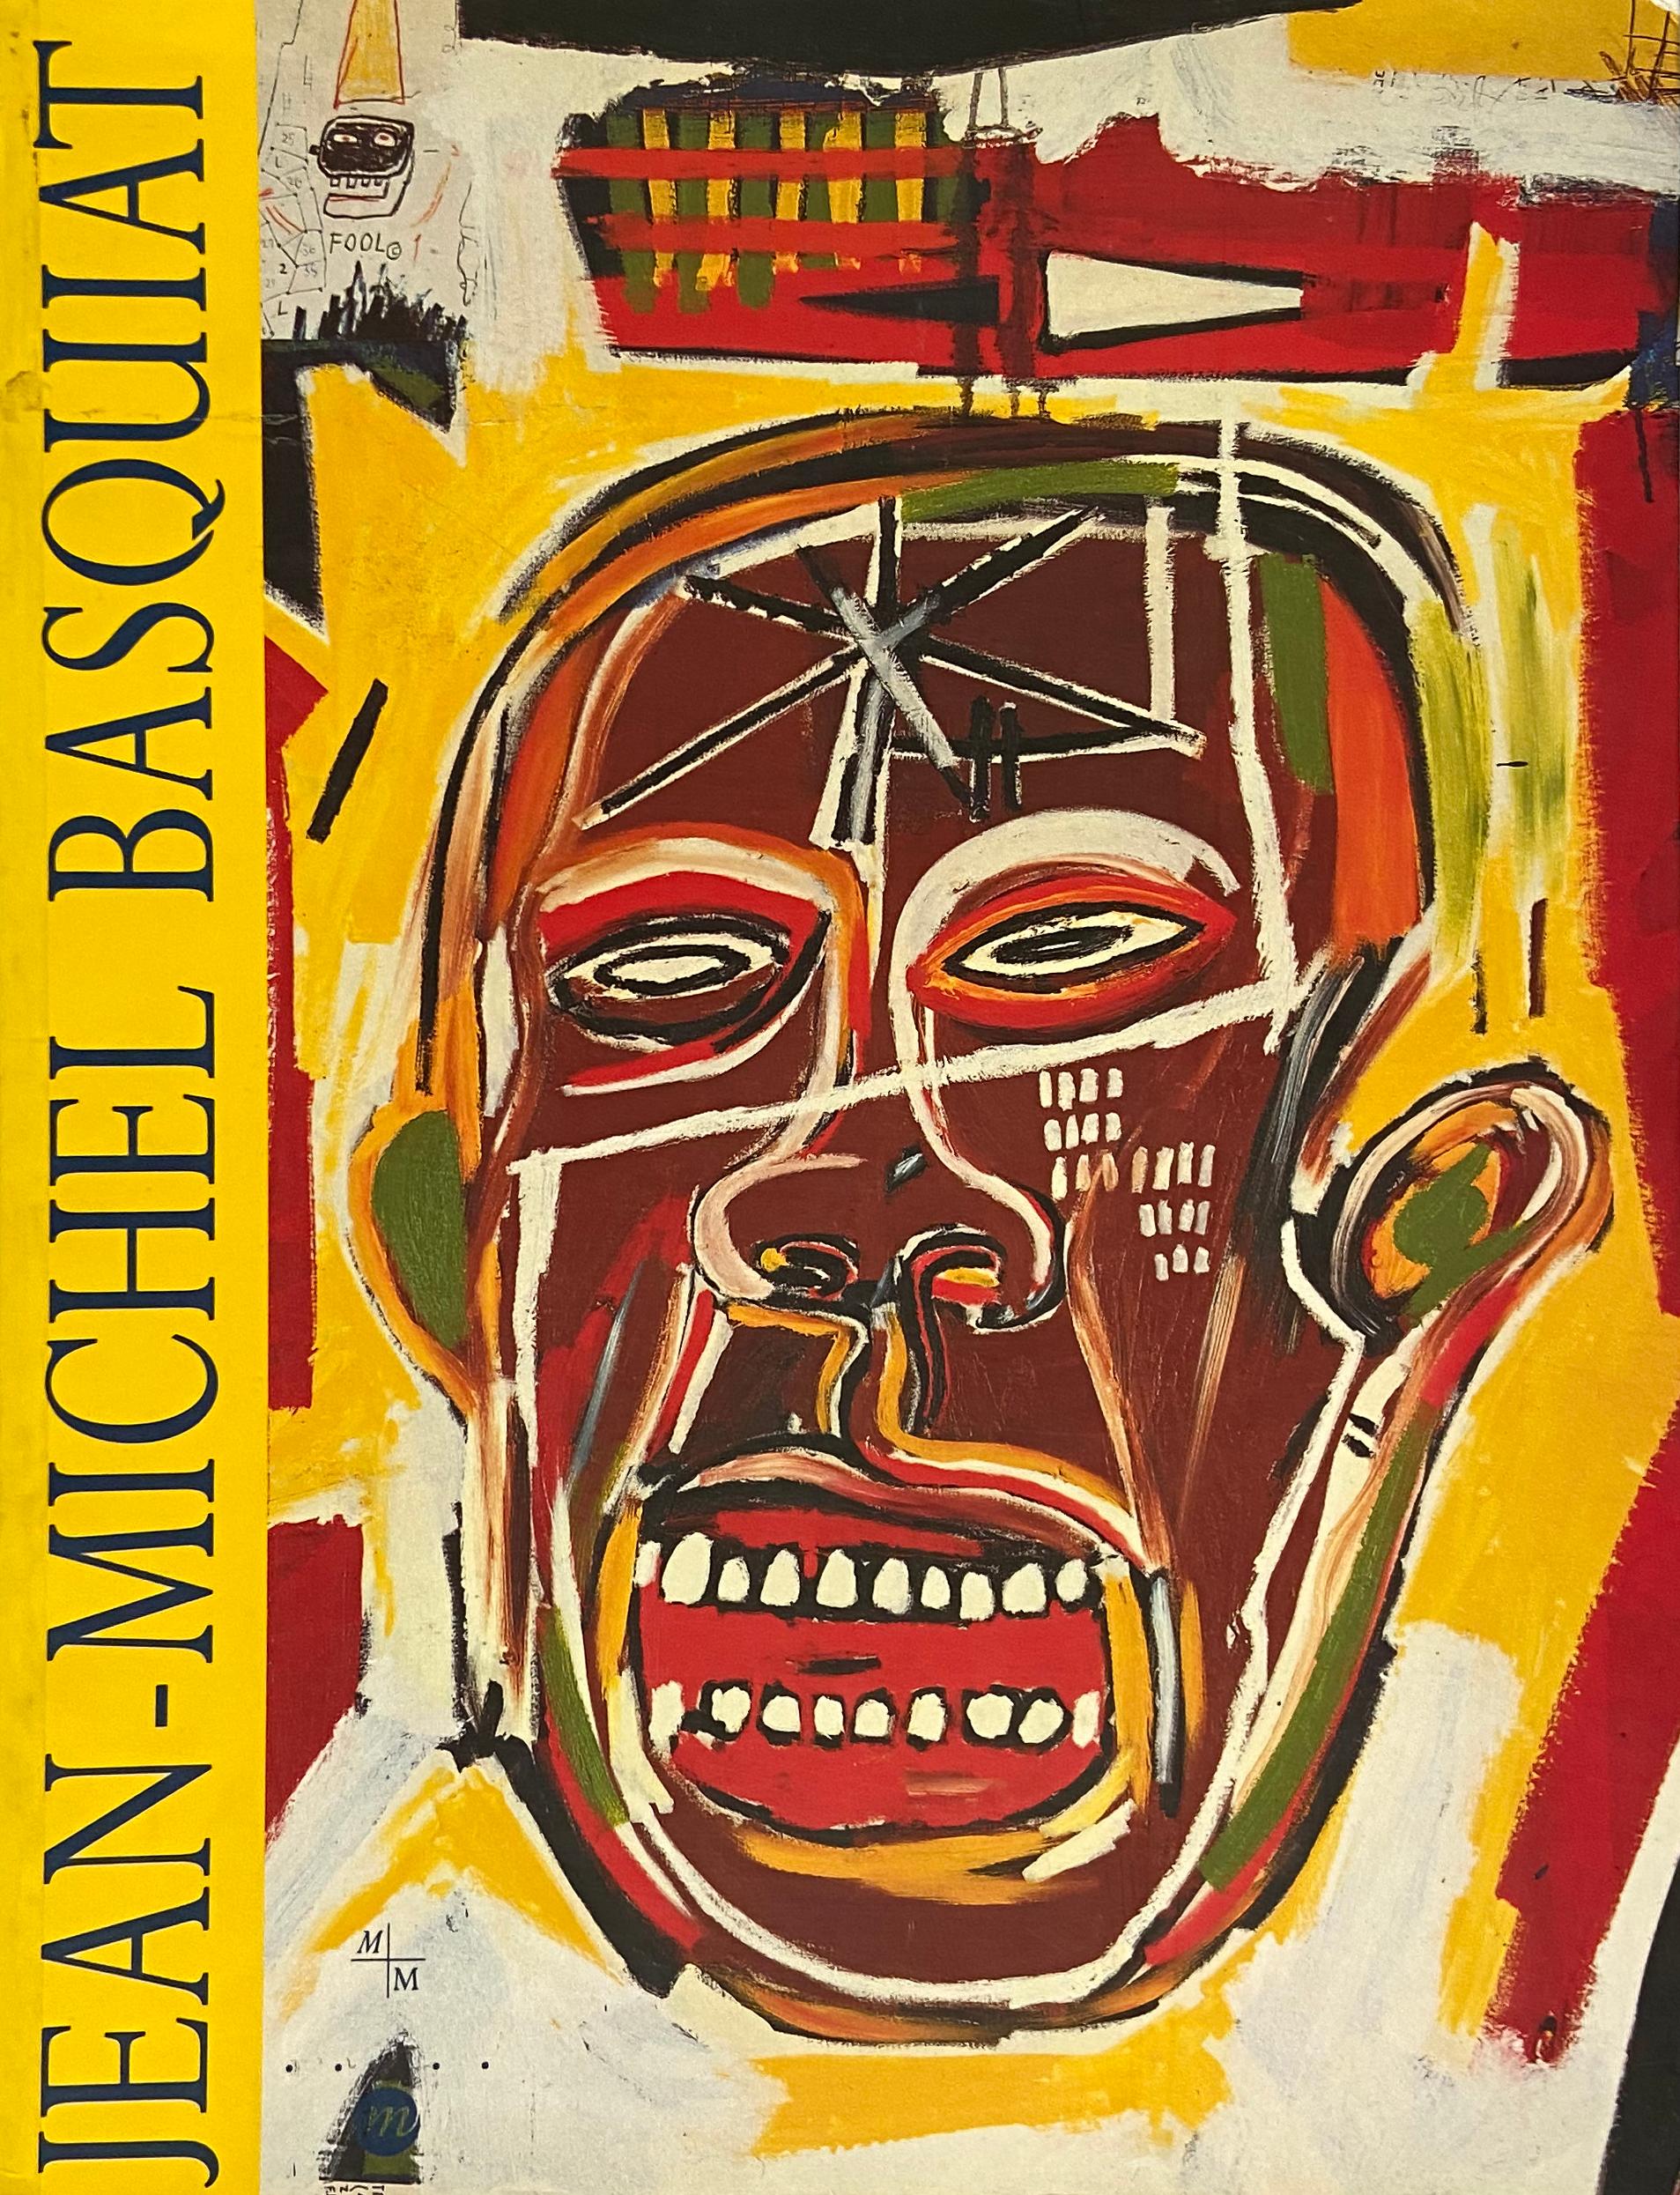 Original-Ausstellungskatalog, für Jean-Michel Basquiat - Eine Retrospektive; Musée Cantini, Marseille, Frankreich, 1992.

Illustrierter Umschlag mit Klappen, 192 Seiten; ca. 30 x 23 cm (10 x 12 Zoll).

Ungefähr 65 farbige Reproduktionen sowie einige